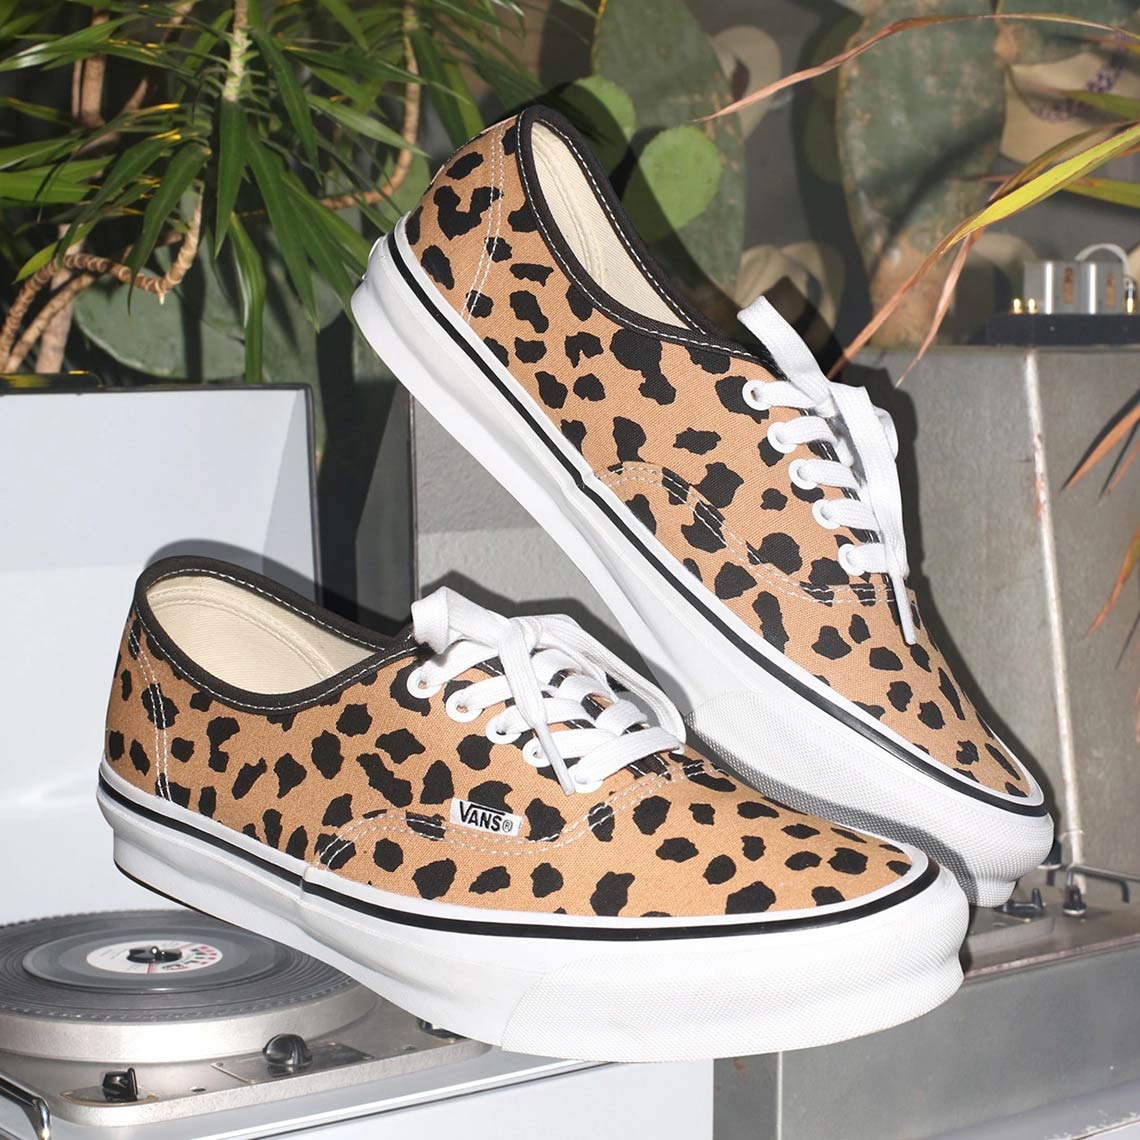 Wacko Maria x Vans Authentic "Leopard" Pack